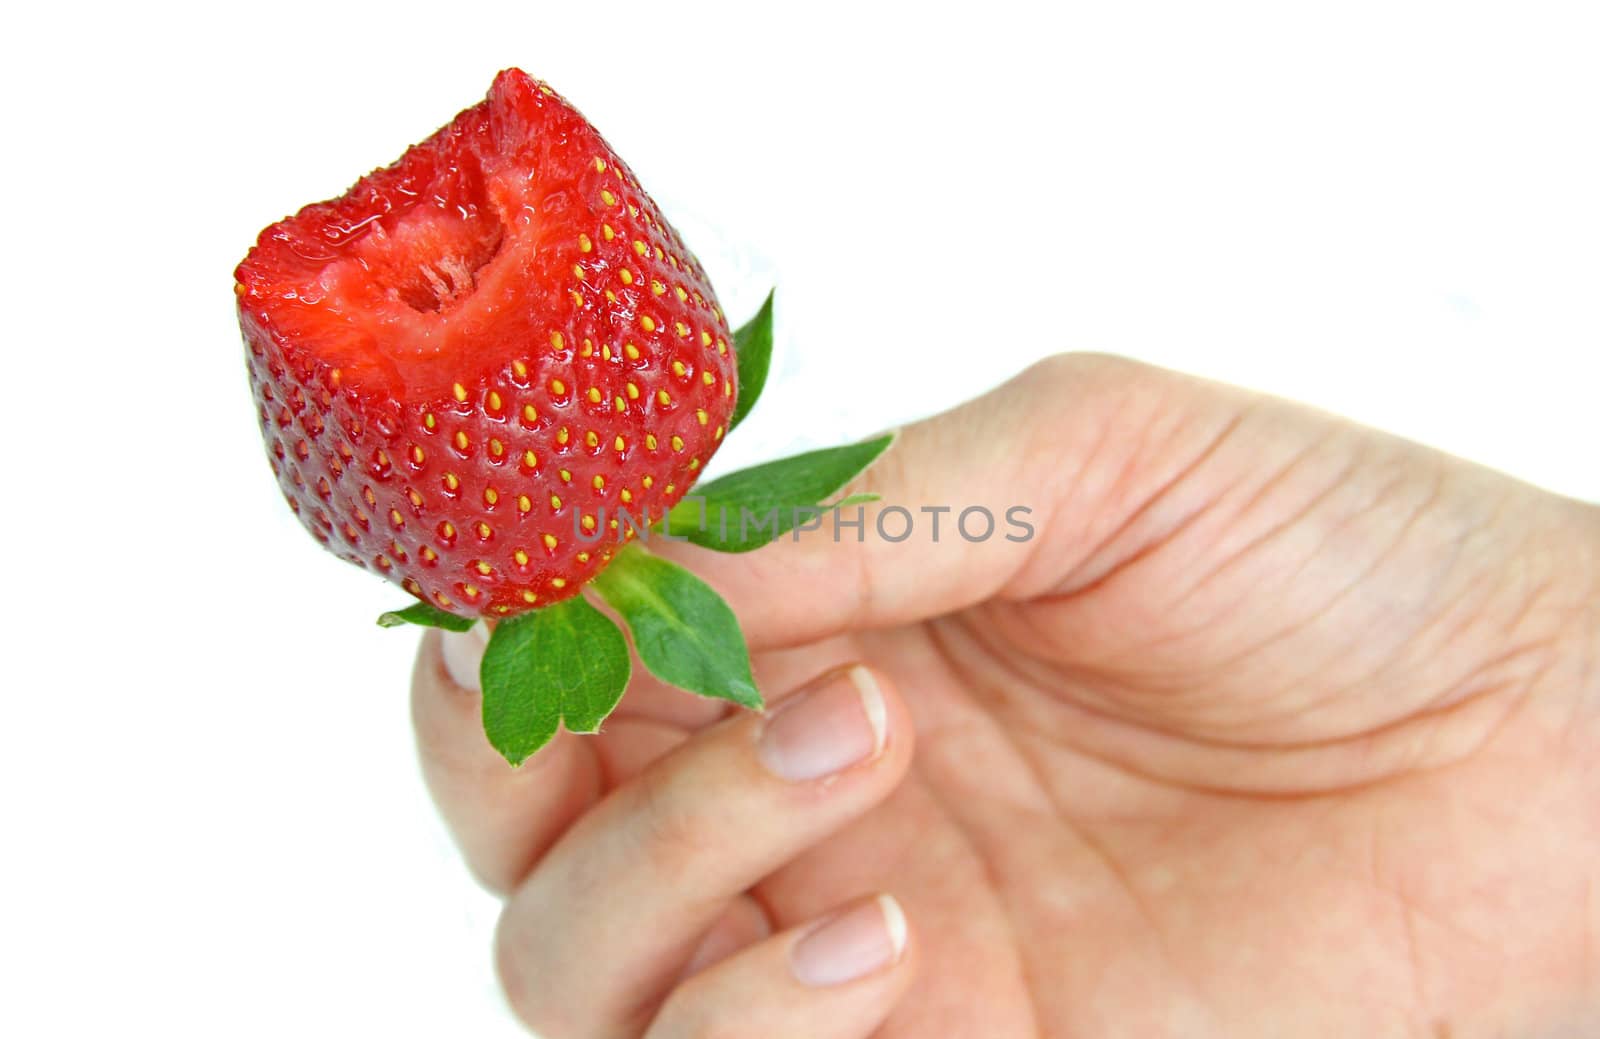 Strawberry by Digoarpi